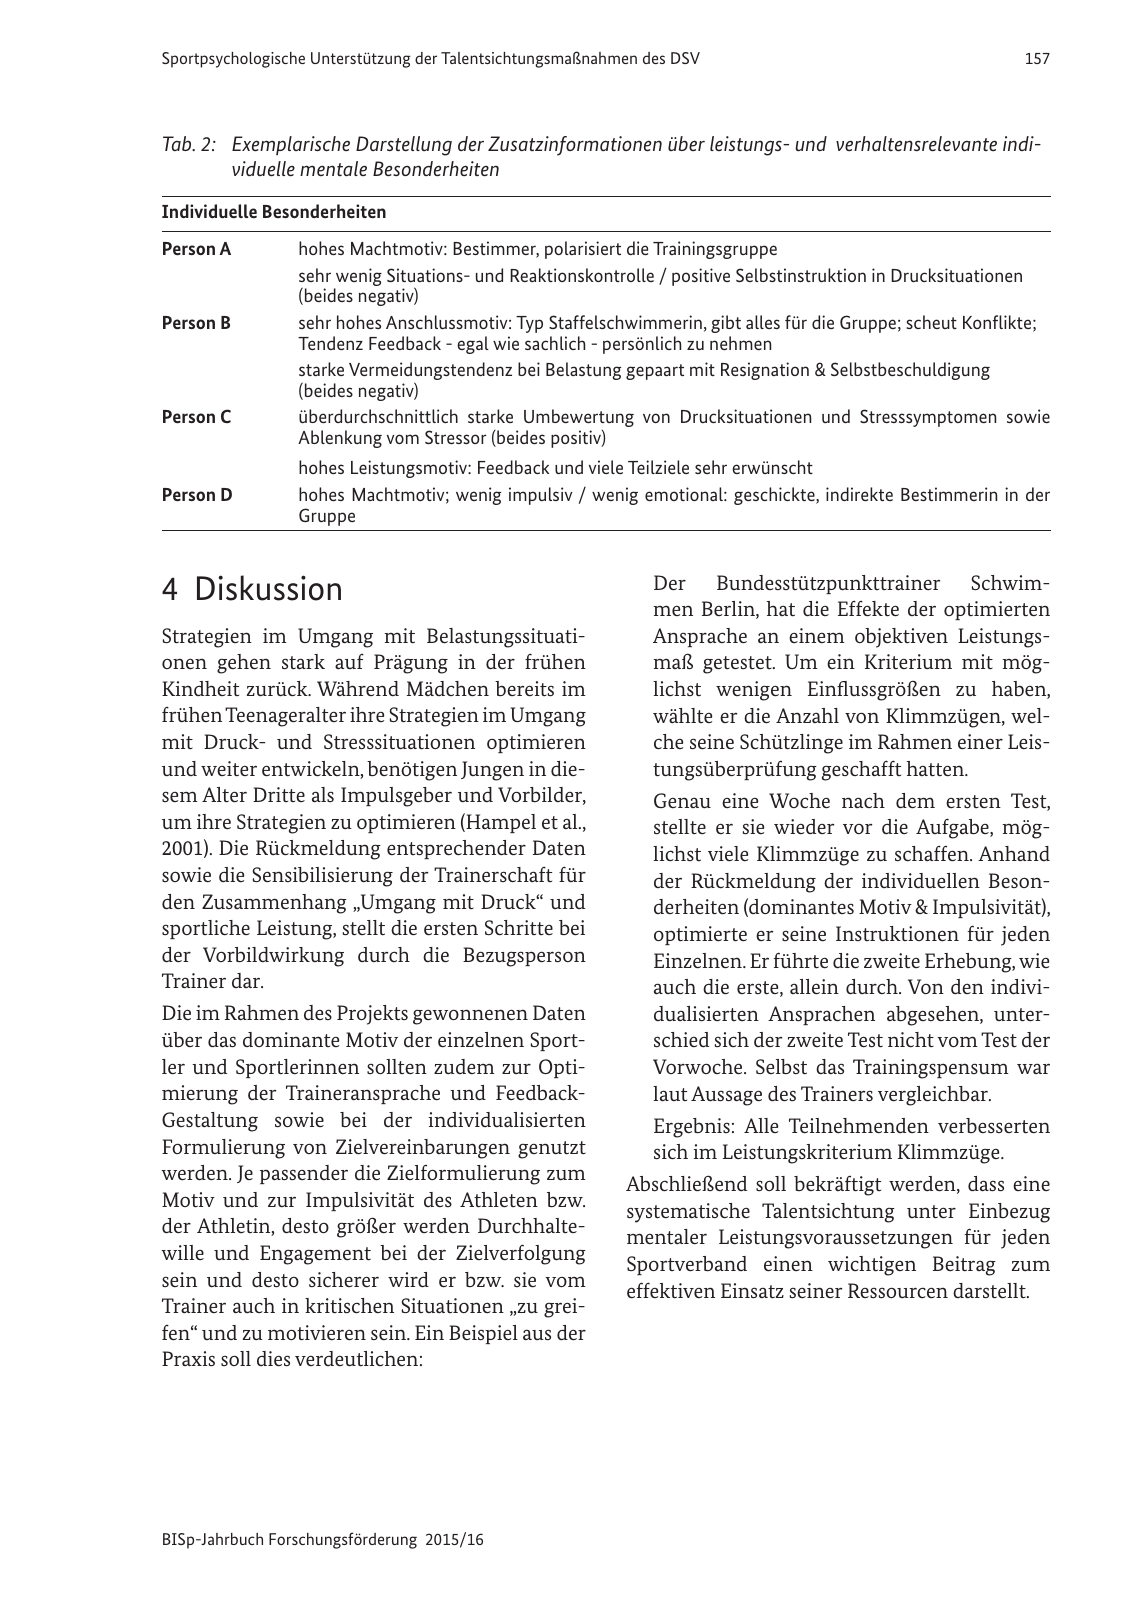 Vorschau BISp-Jahrbuch Forschungsförderung 2015/16 Seite 159